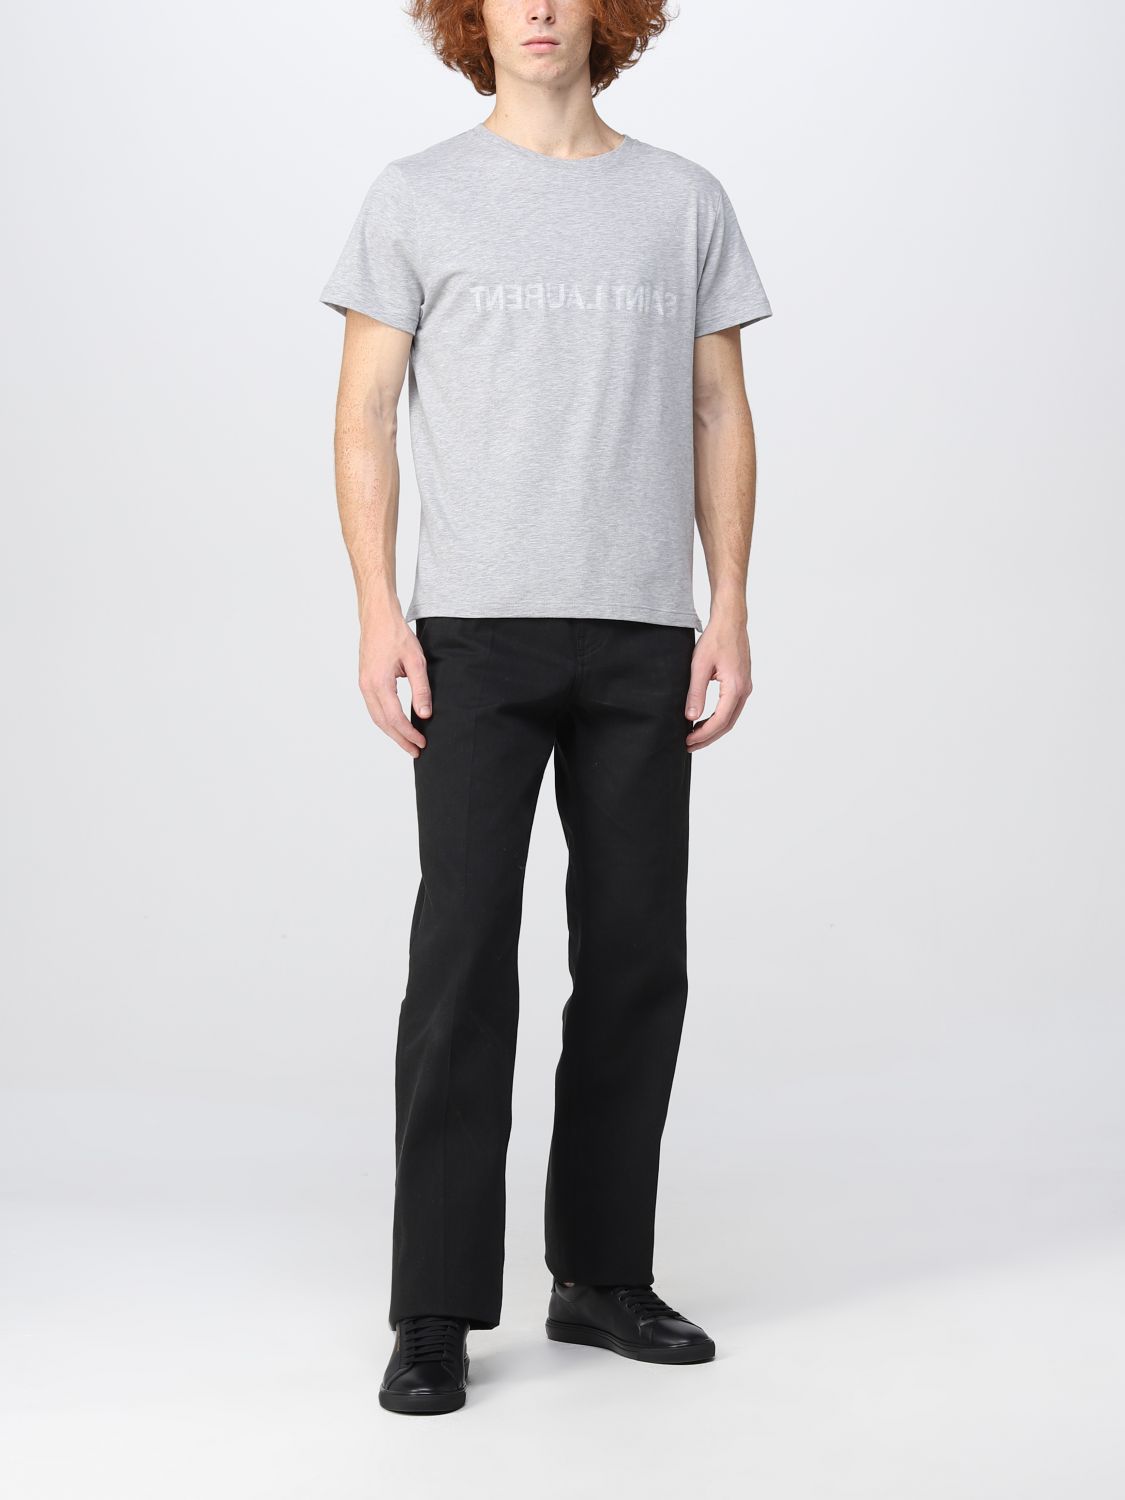 Camiseta Saint Laurent: Camiseta Saint Laurent para hombre gris 2